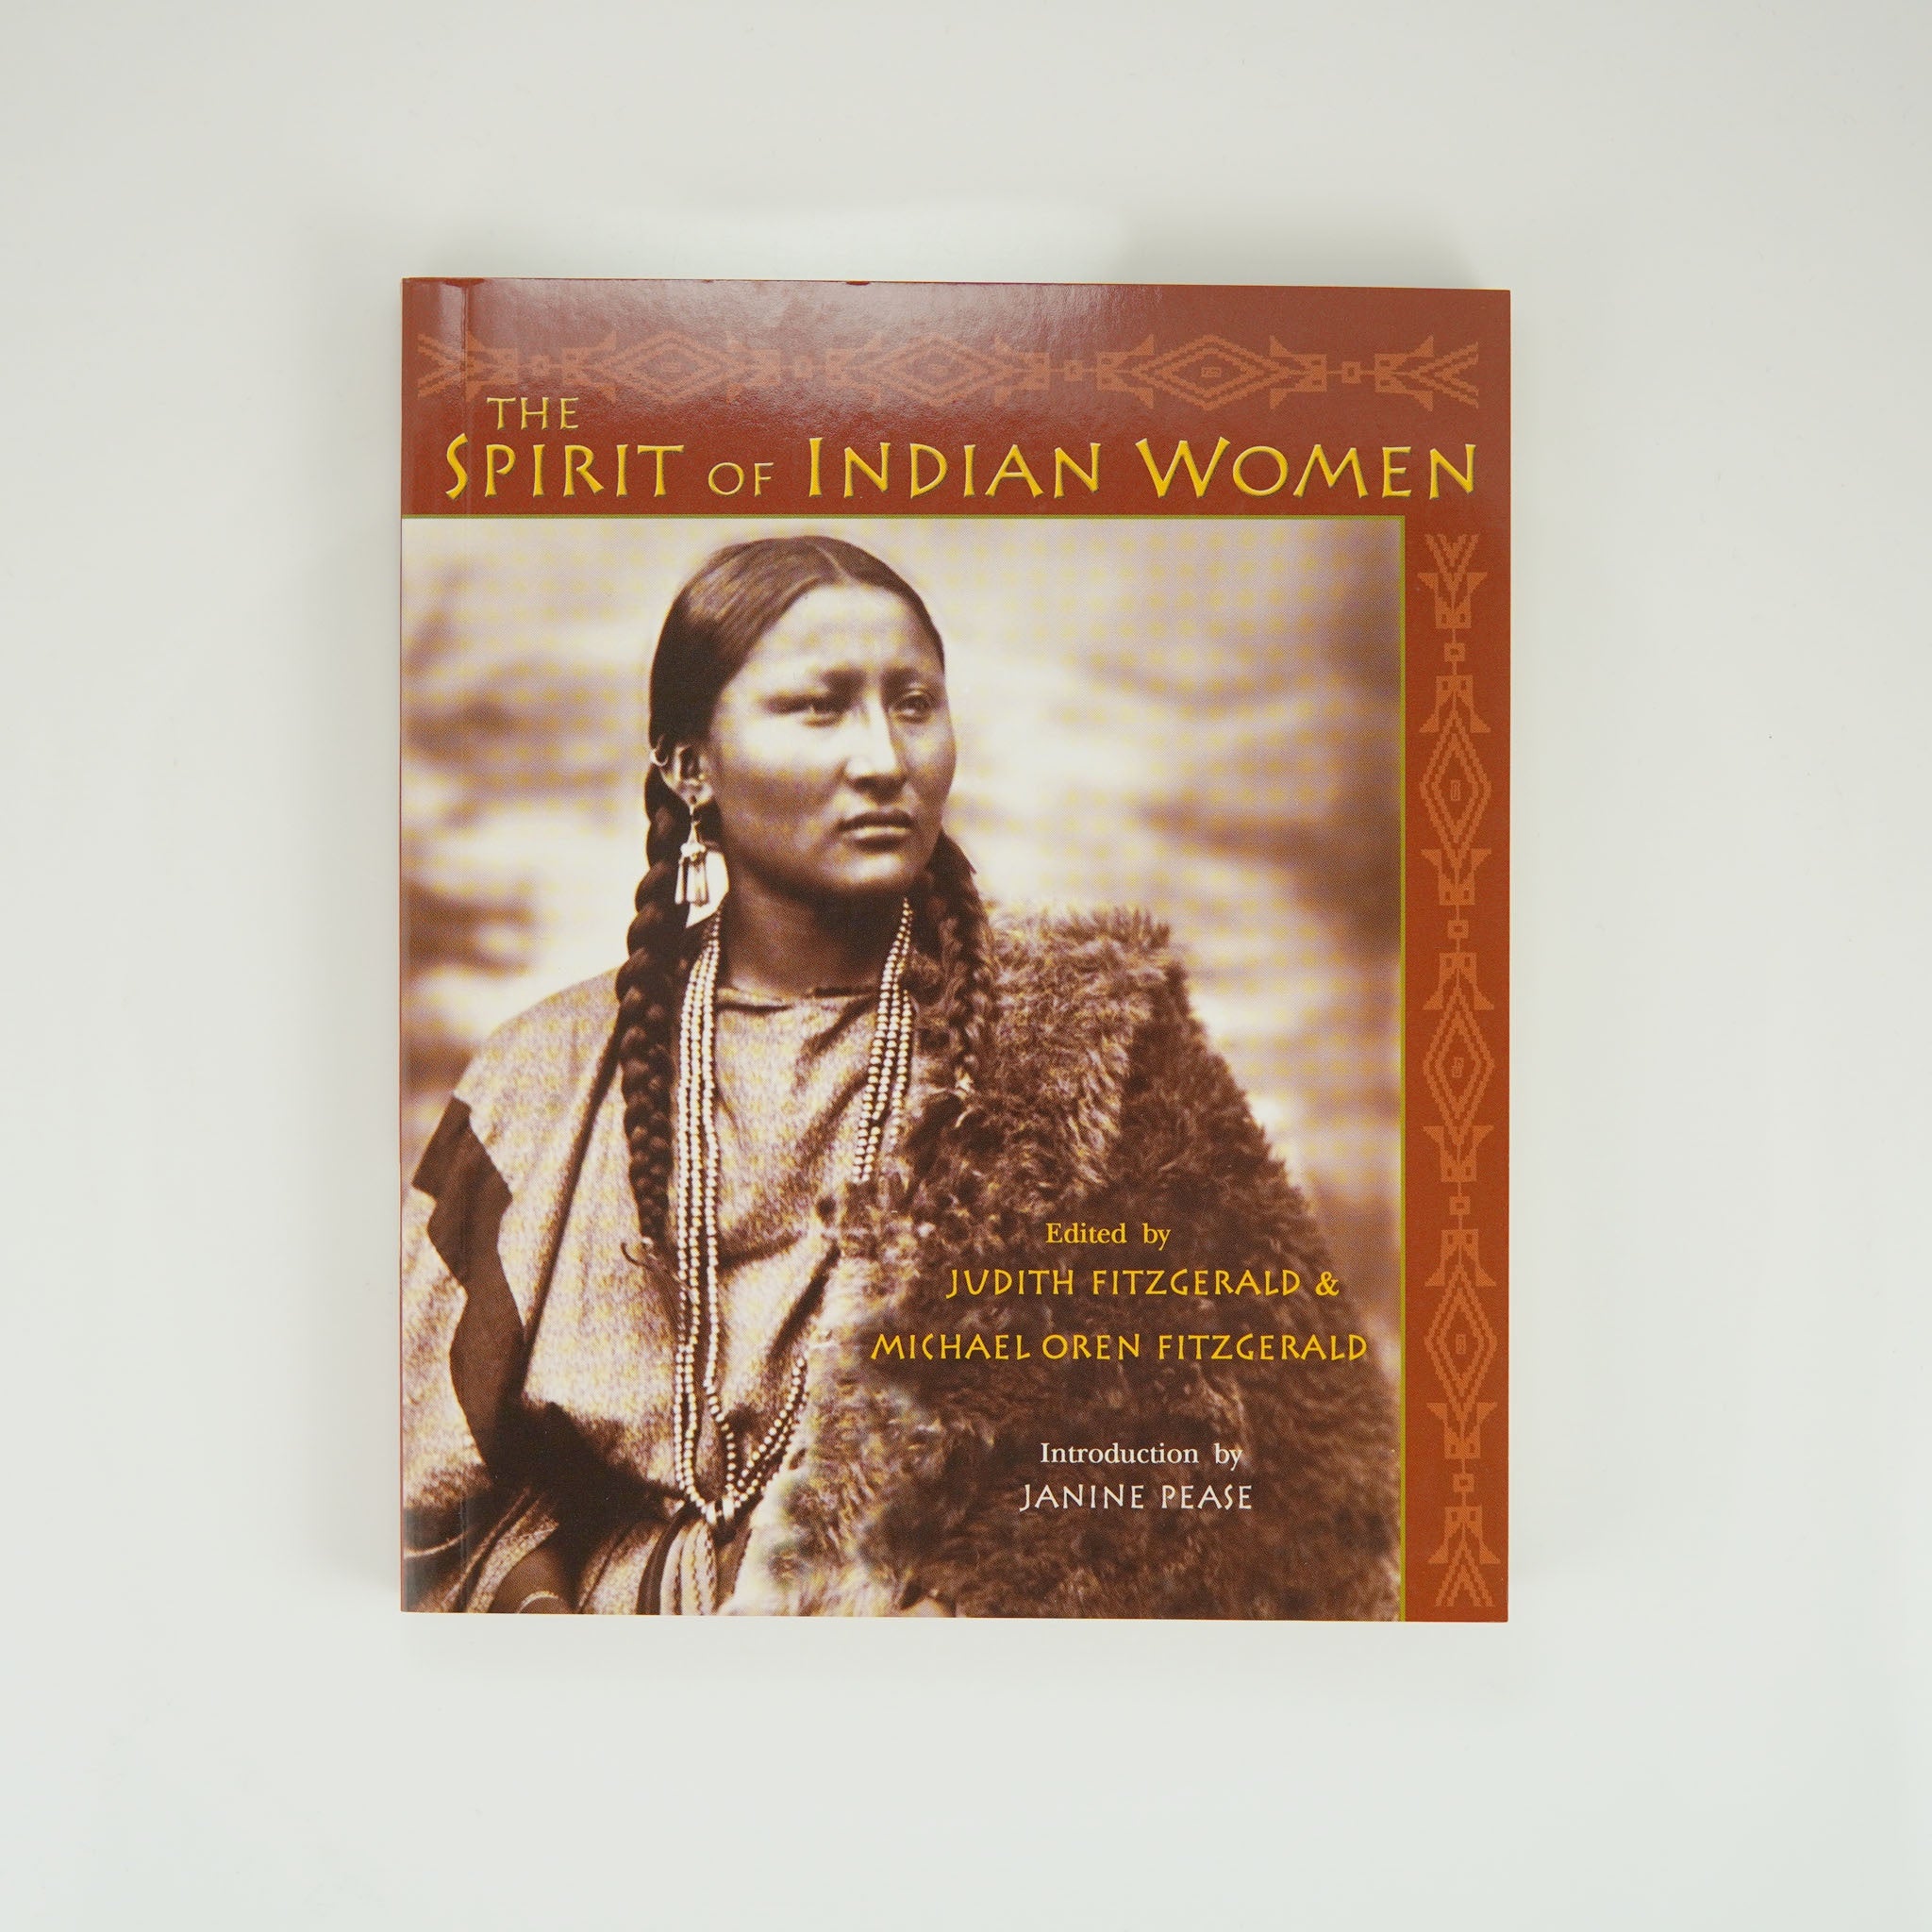 BK 12 SPIRIT OF INDIAN WOMEN BY JUDITH FITZGERALD #21028966 D2 DEC23